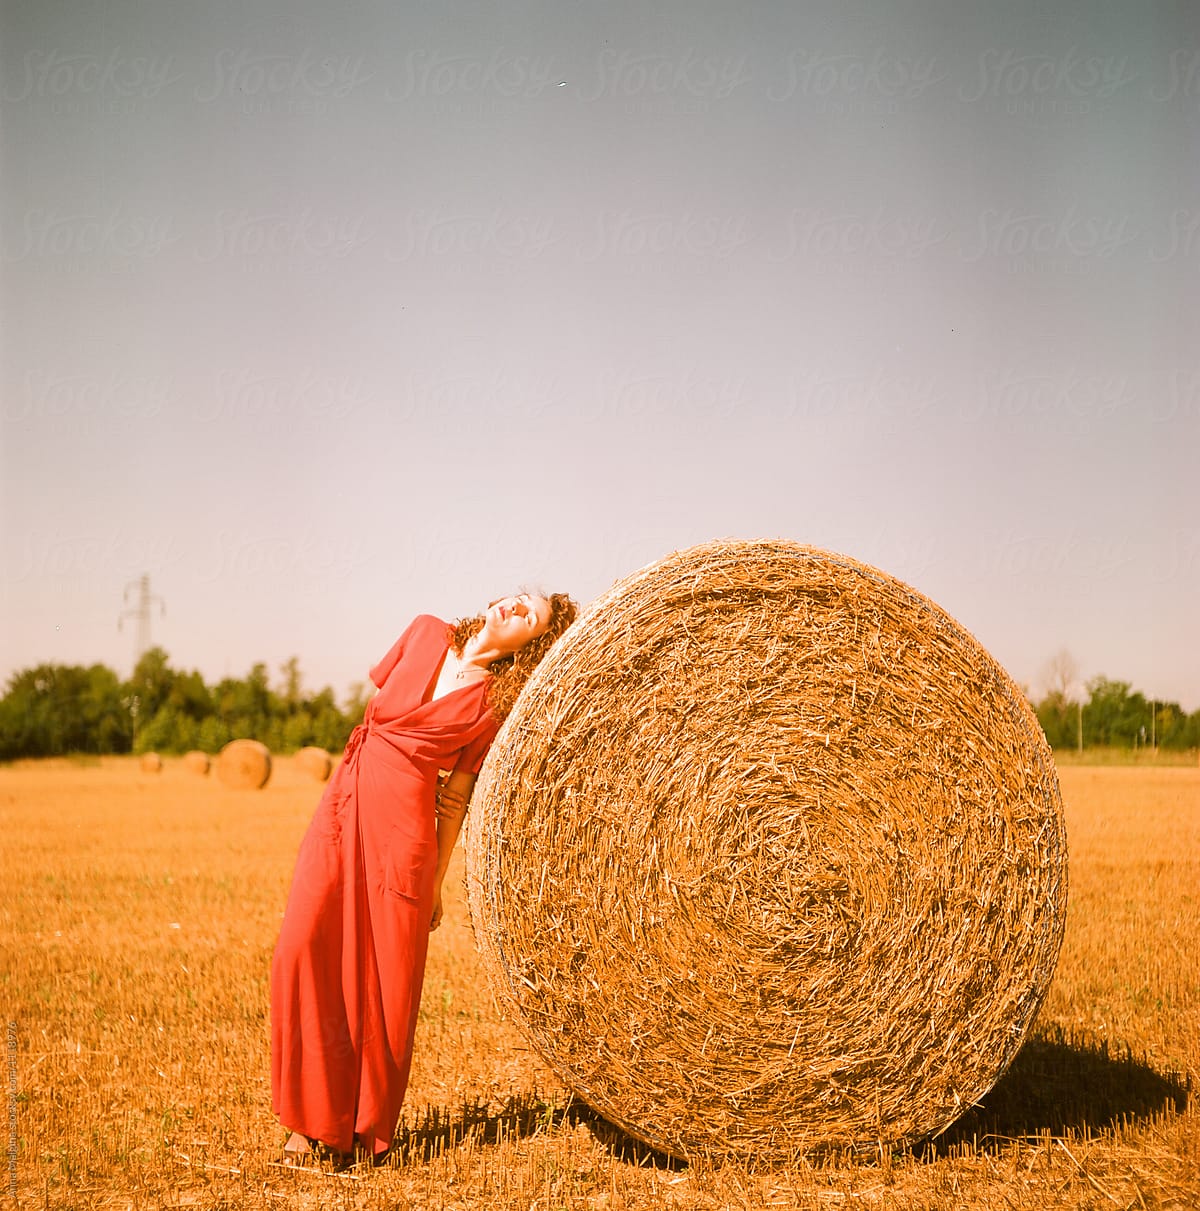 Lady in red in a grain field